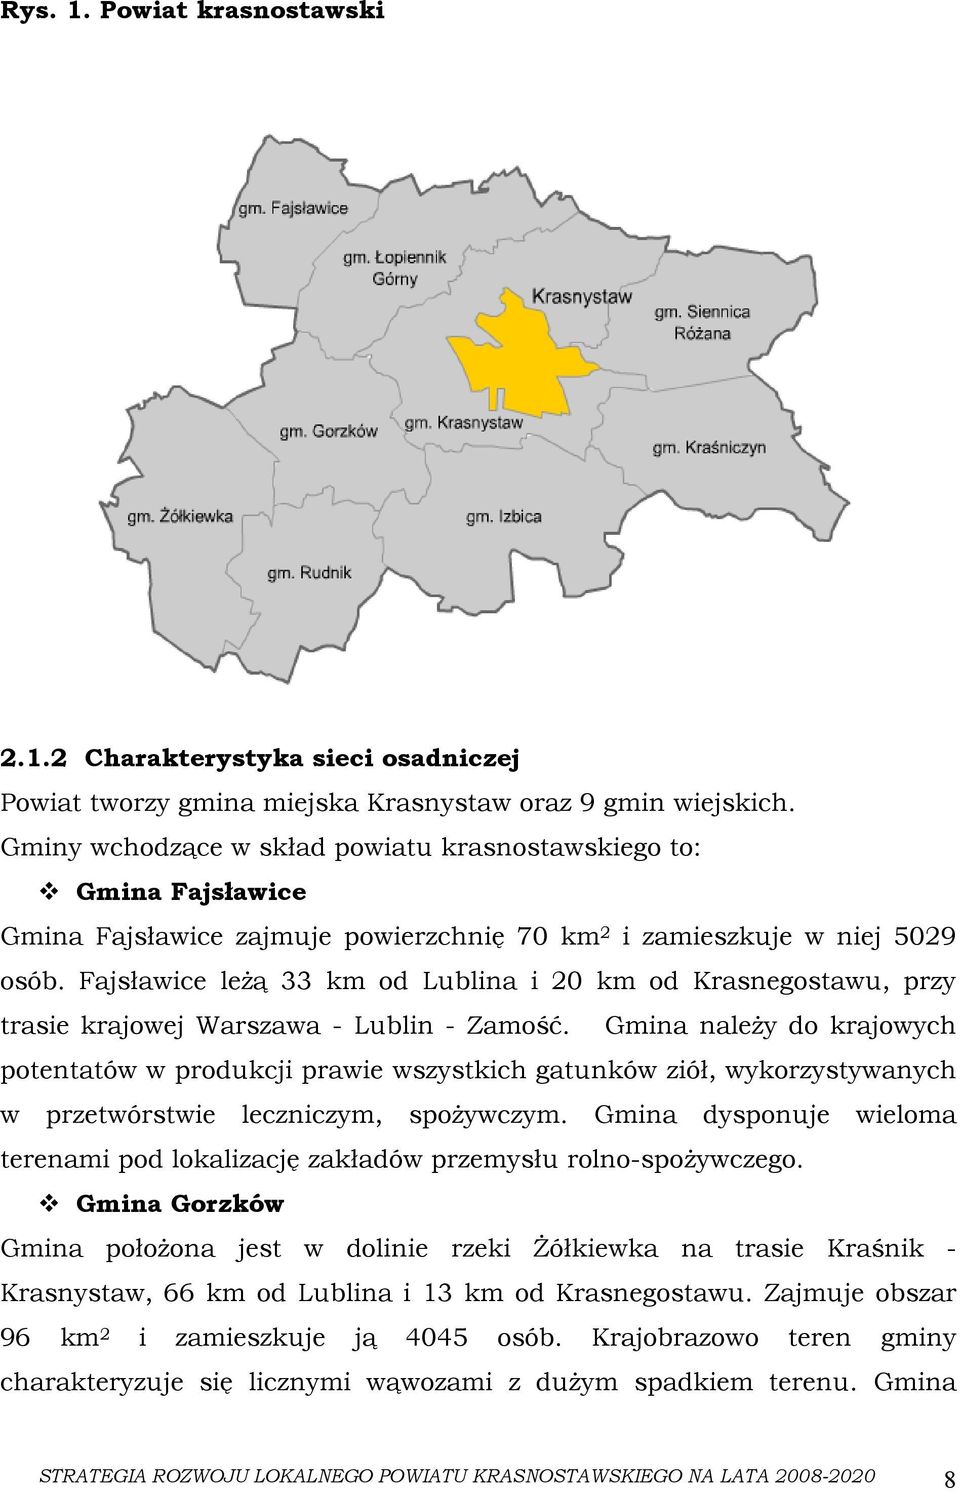 Fajsławice leżą 33 km od Lublina i 20 km od Krasnegostawu, przy trasie krajowej Warszawa - Lublin - Zamość.